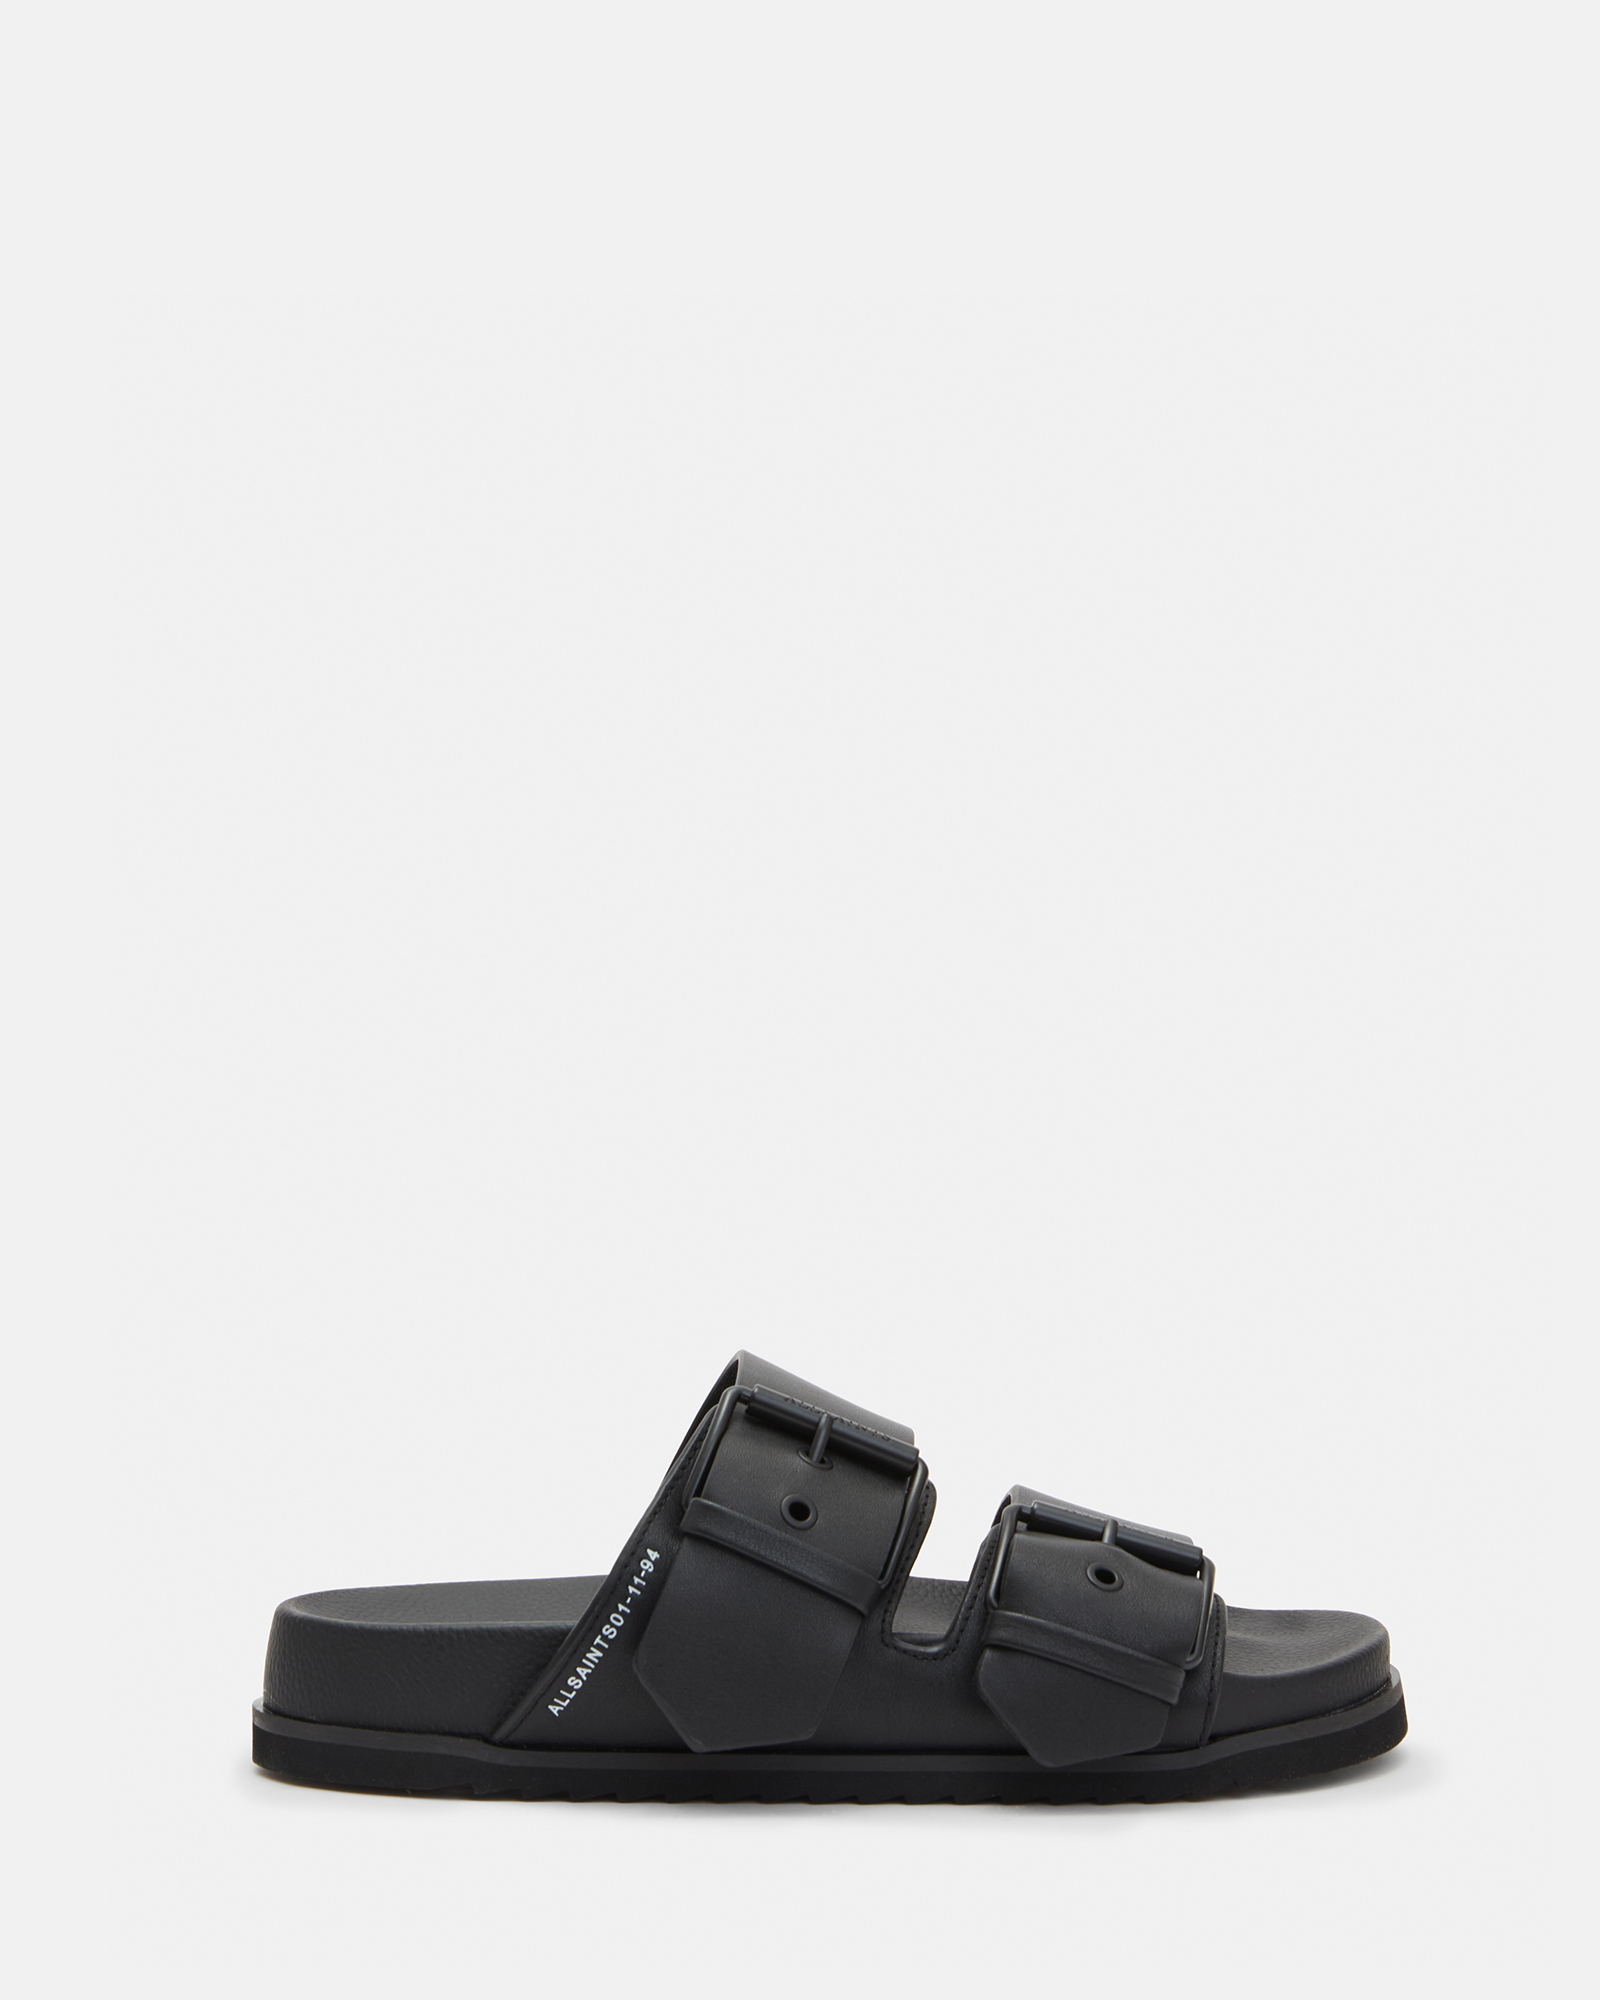 Sian Leather Sandals Black | ALLSAINTS US